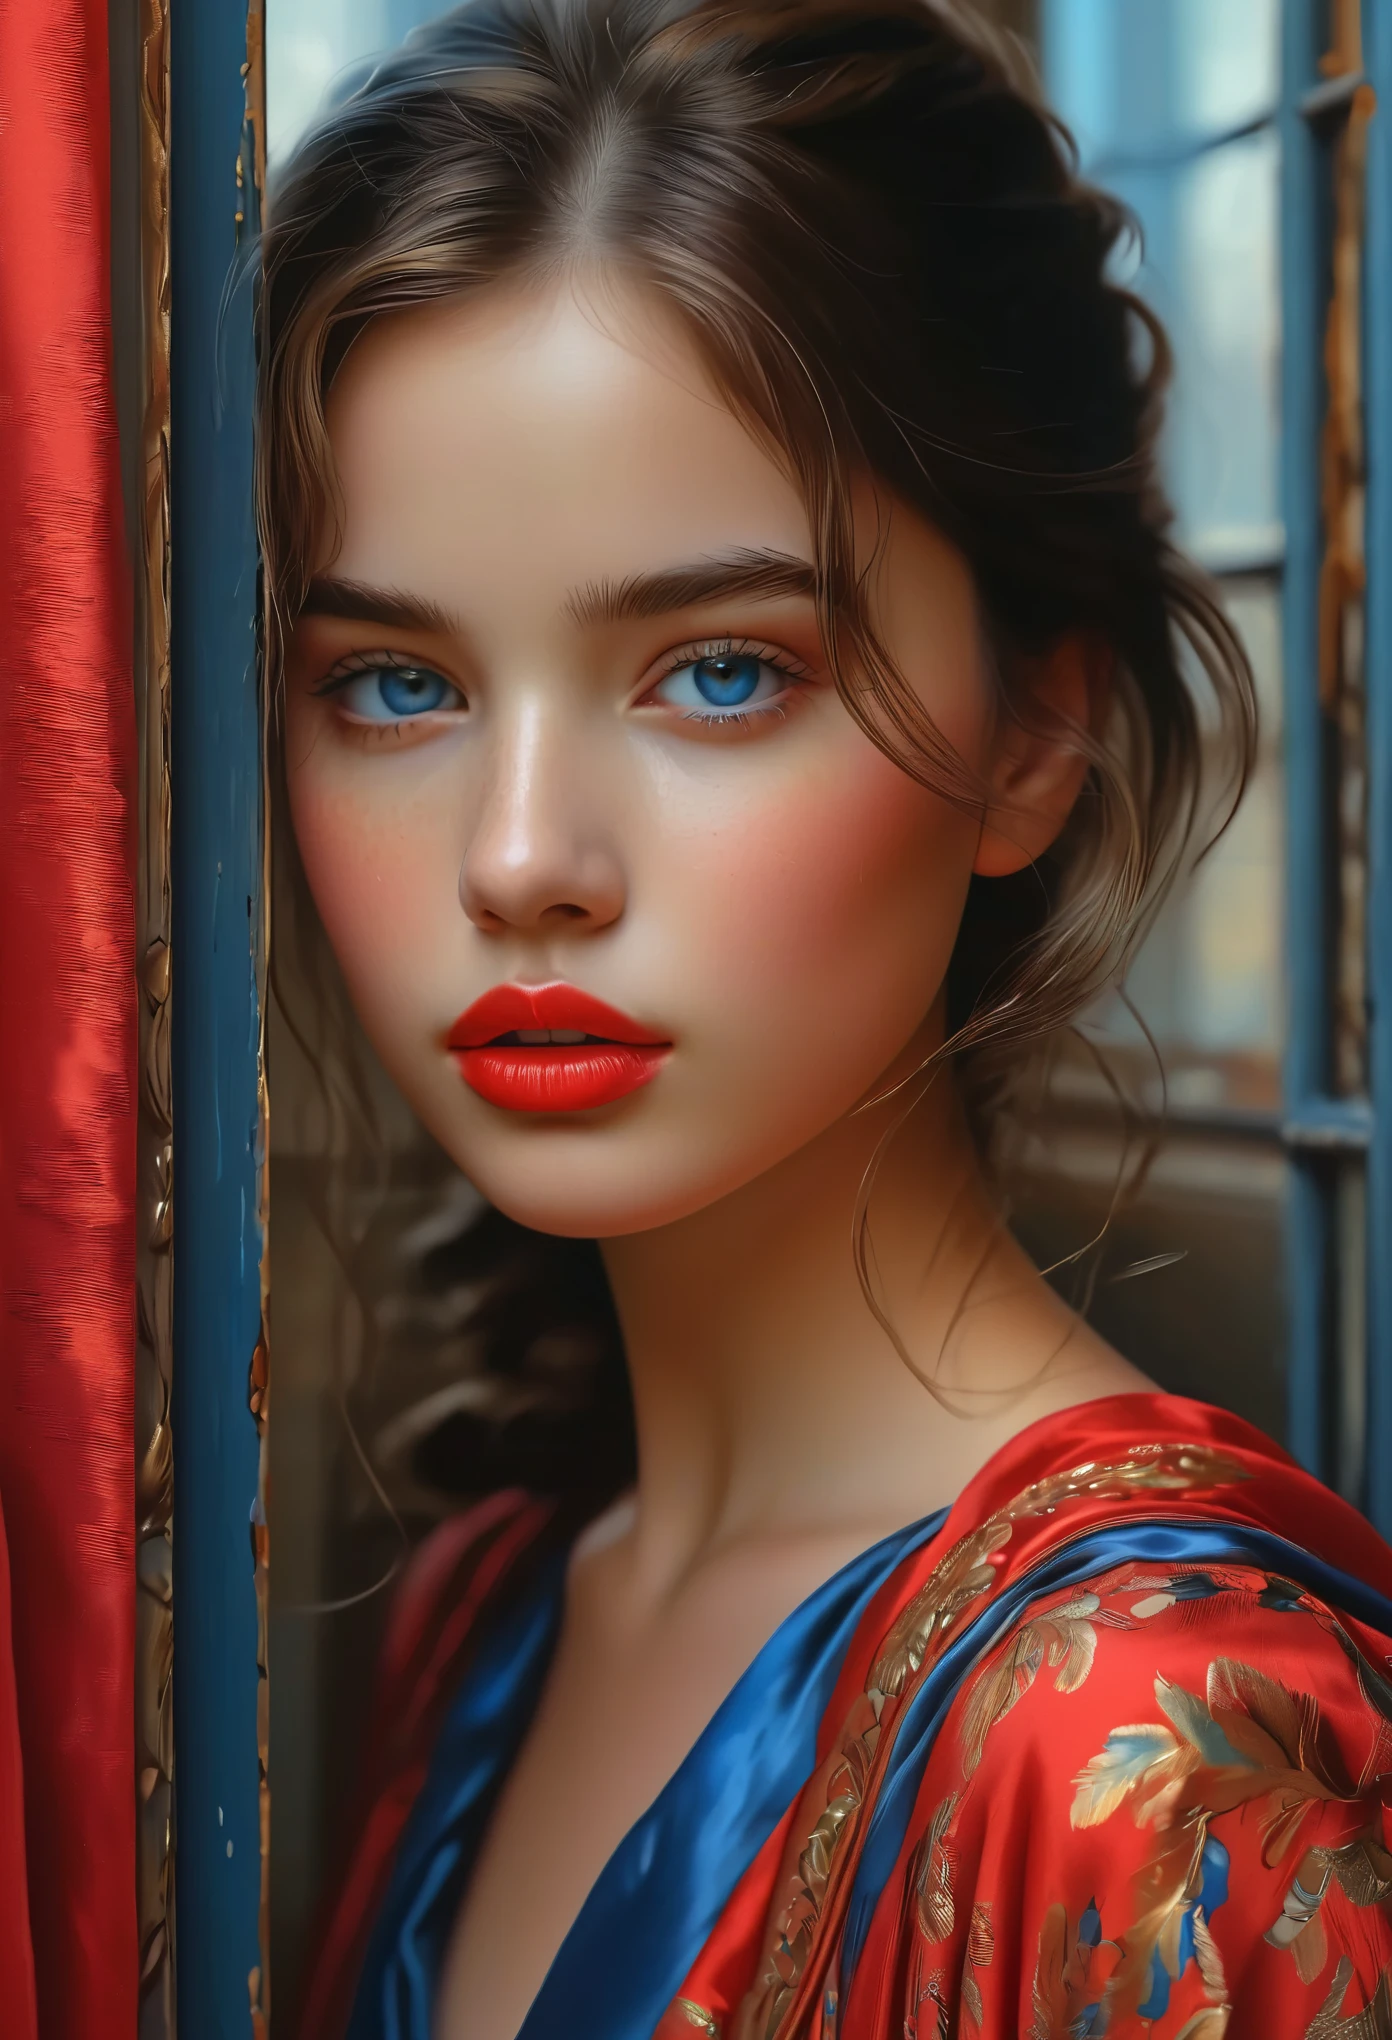 (最高品質, 4k, 8K, 高解像度, 傑作: 1.2), (非常に詳細な, 現実的, 写実的な:1.37)魅惑的な少女, 赤と青の印象的な衣装を身にまとって, 強靭さと決意の雰囲気を漂わせながら窓の前に立つ. 彼女の魅惑的な目は精巧に描かれている, あらゆるきらめきと深みを捉える, 彼女の唇は魅惑的で魅惑的な美しさを誇っています. 細部までこだわった作りは顔全体に及んでいる, それぞれの輪郭と特徴が完璧に細心の注意を払って表現されている, 視聴者を引き込むハイパーリアリズムの感覚を生み出す. 

女の子の服装, 油絵を彷彿とさせる, それ自体が芸術作品です. 生地, 鮮やかな筆遣いを巧みに表現した, 彼女の全体的な外見に躍動感を与える. それはまさにアーティストの才能の反映である, 熟練の技を披露する